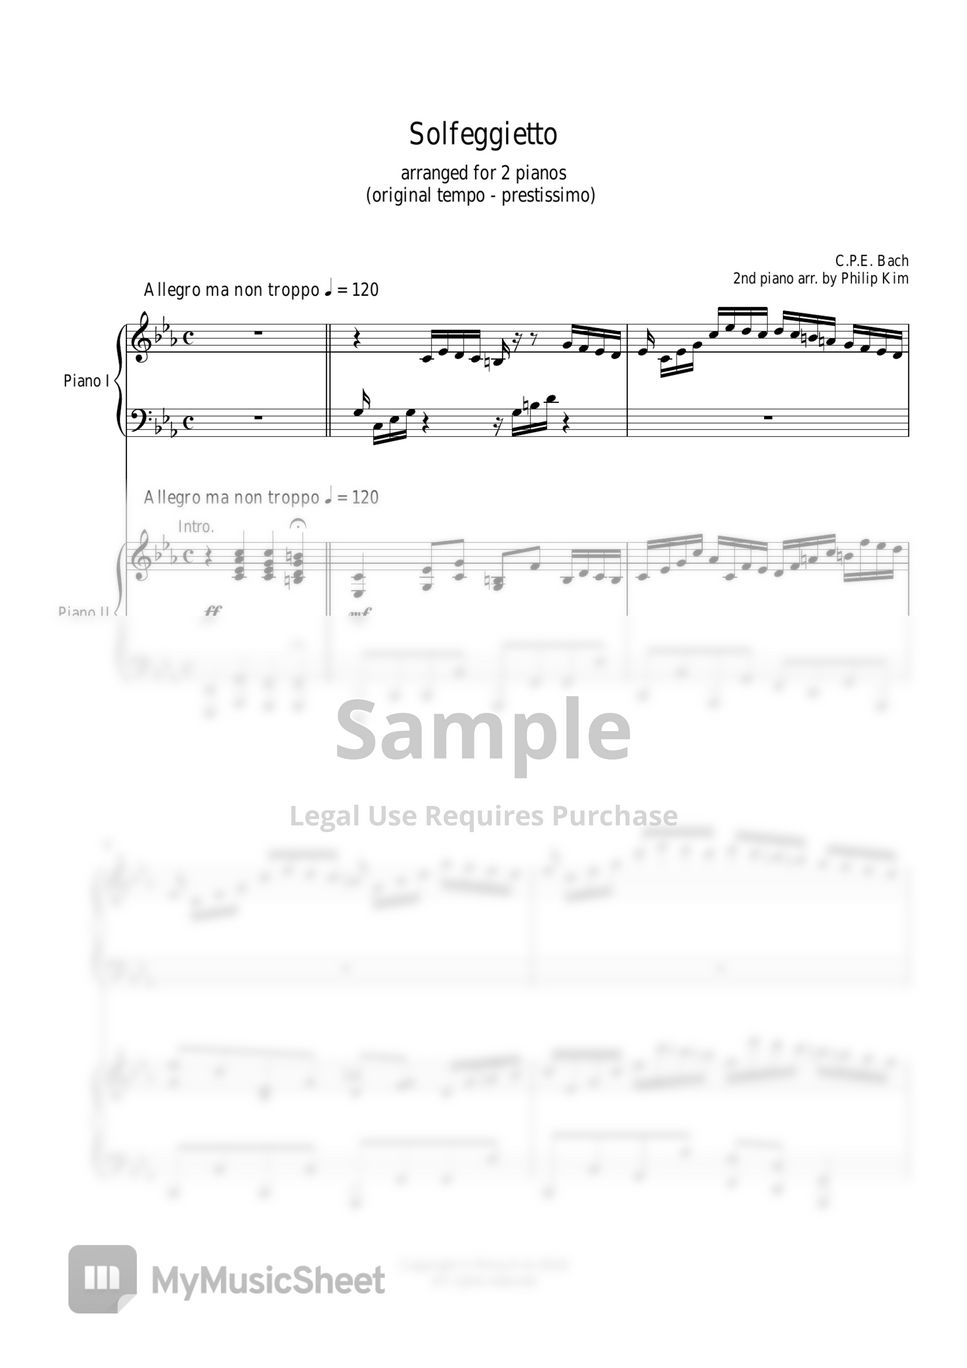 C.P. E. Bach - Solfeggietto arranged for 2 pianos by Philip Kim